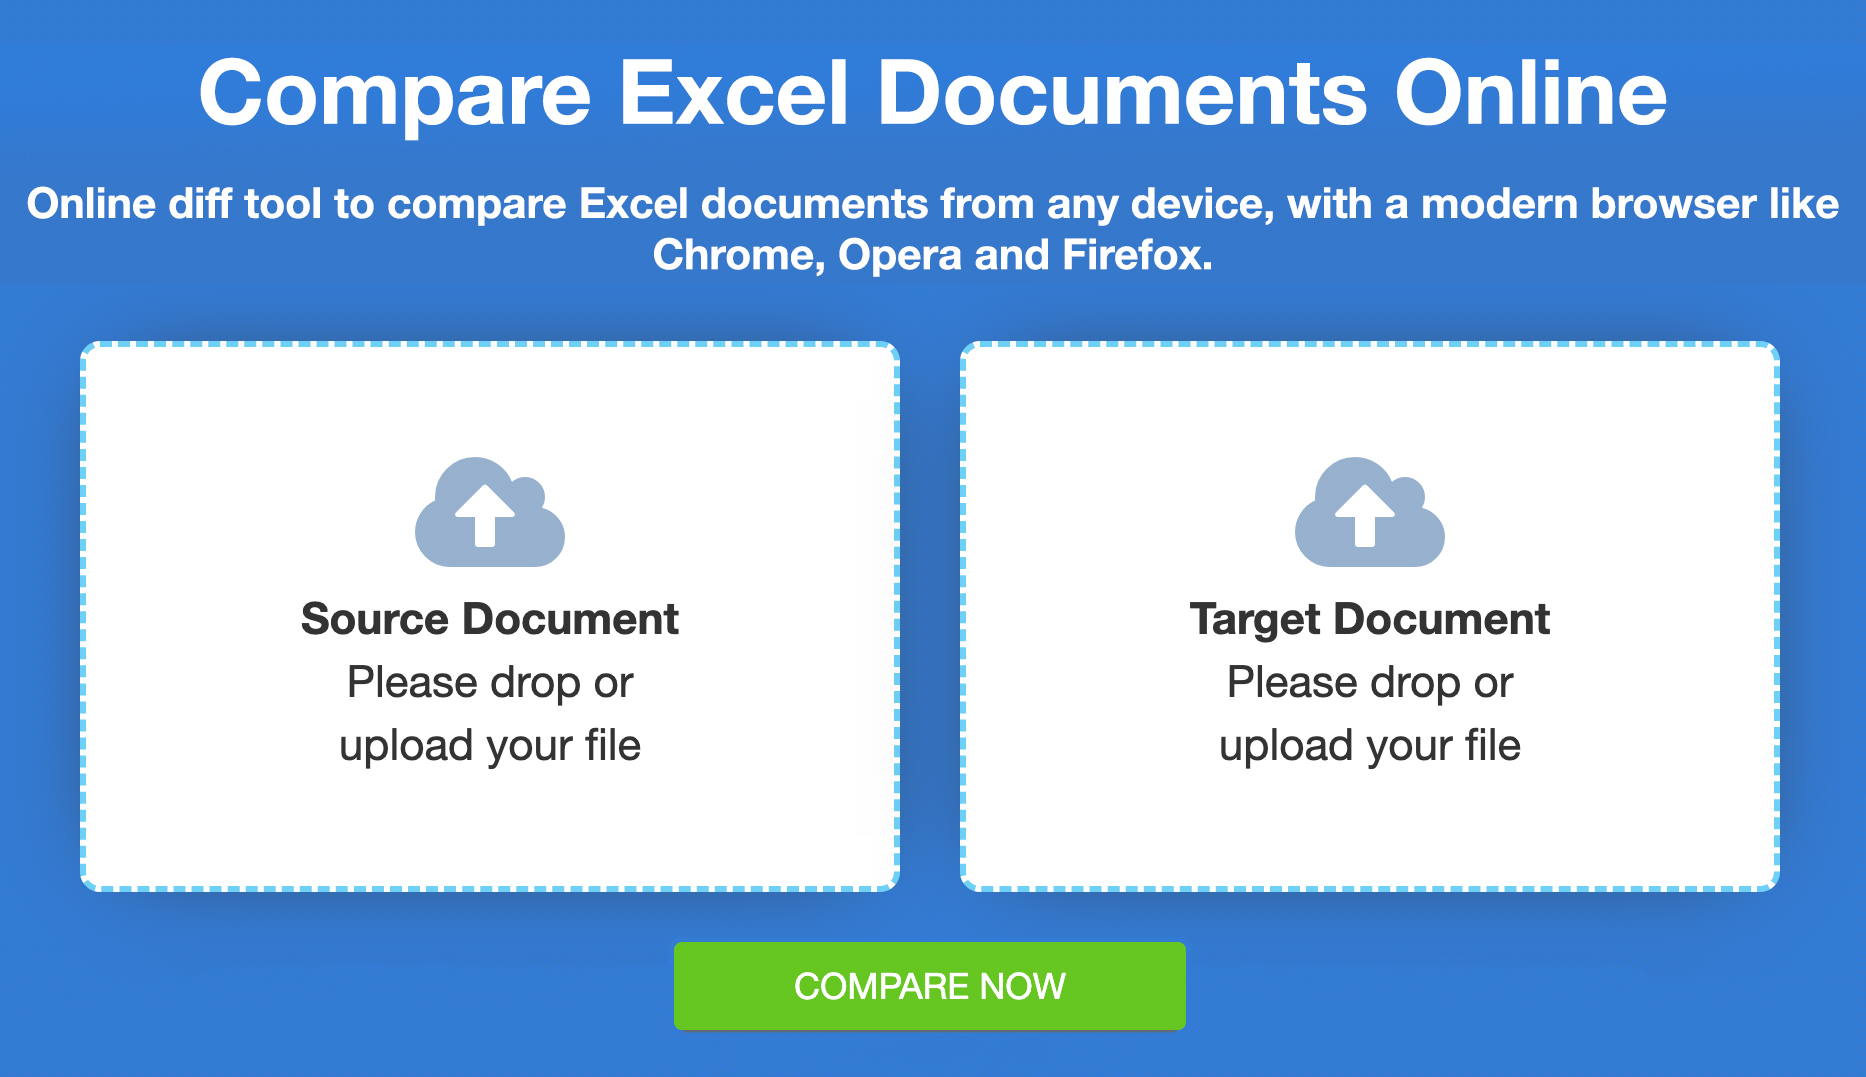 قارن ملفات Excel - مقارنة مجانية عبر الإنترنت